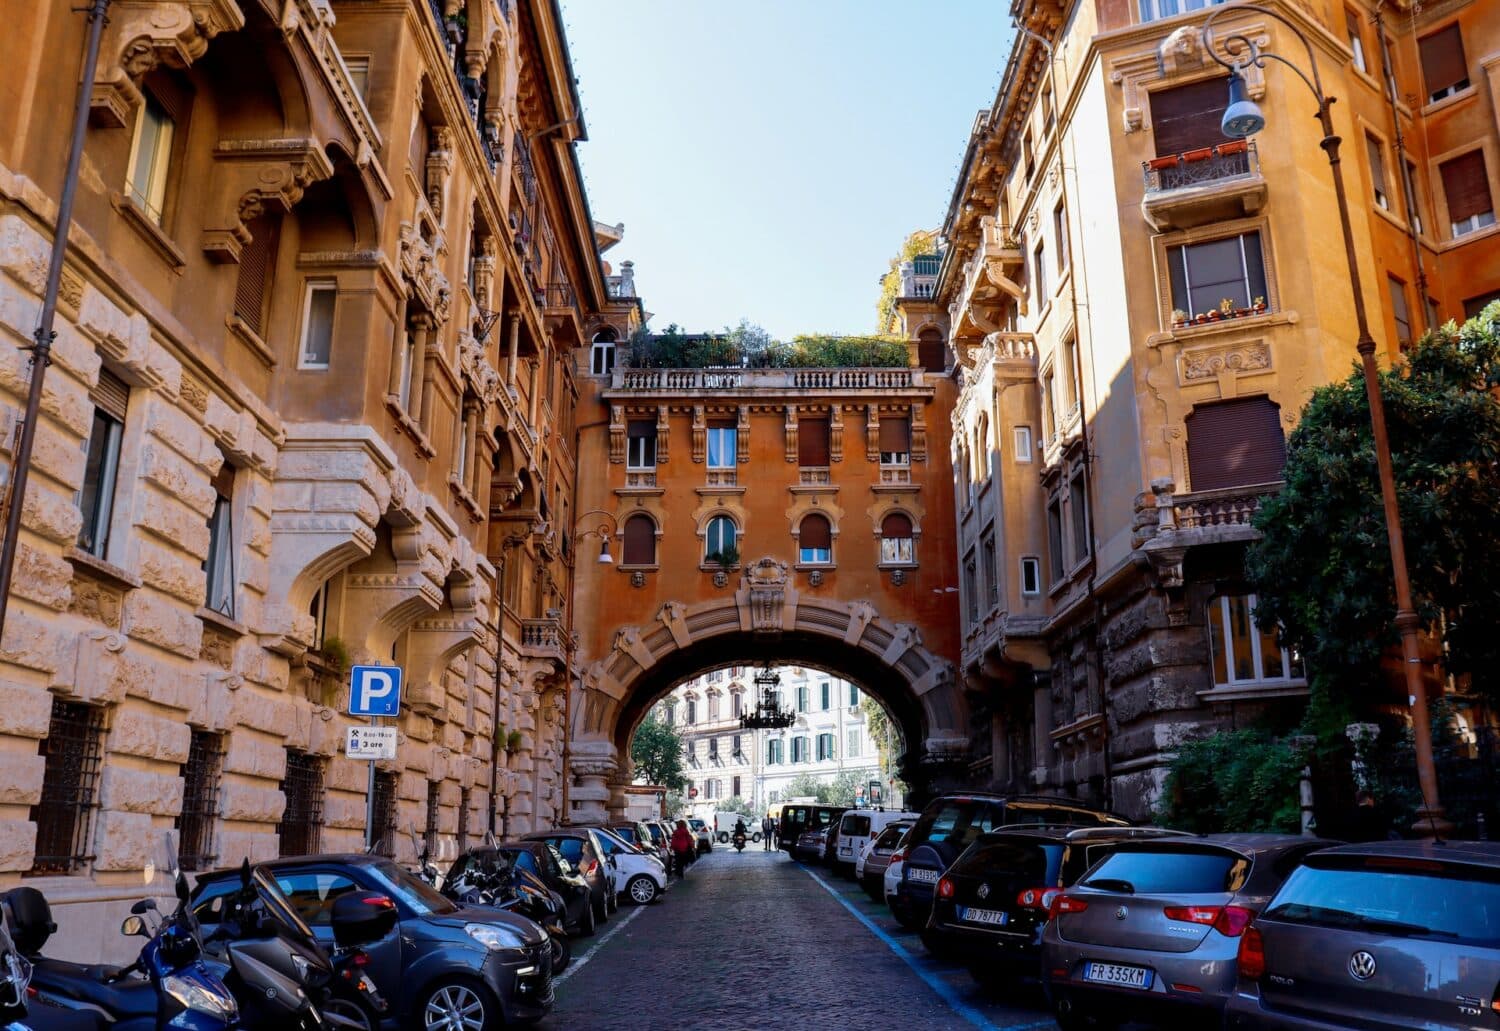 diversos carros estacionados lado a lado no Bairro Coppedé, em Roma, com um belo arco e prédios históricos ricamente trabalhados, para ilustrar o post de aluguel de carros em Roma